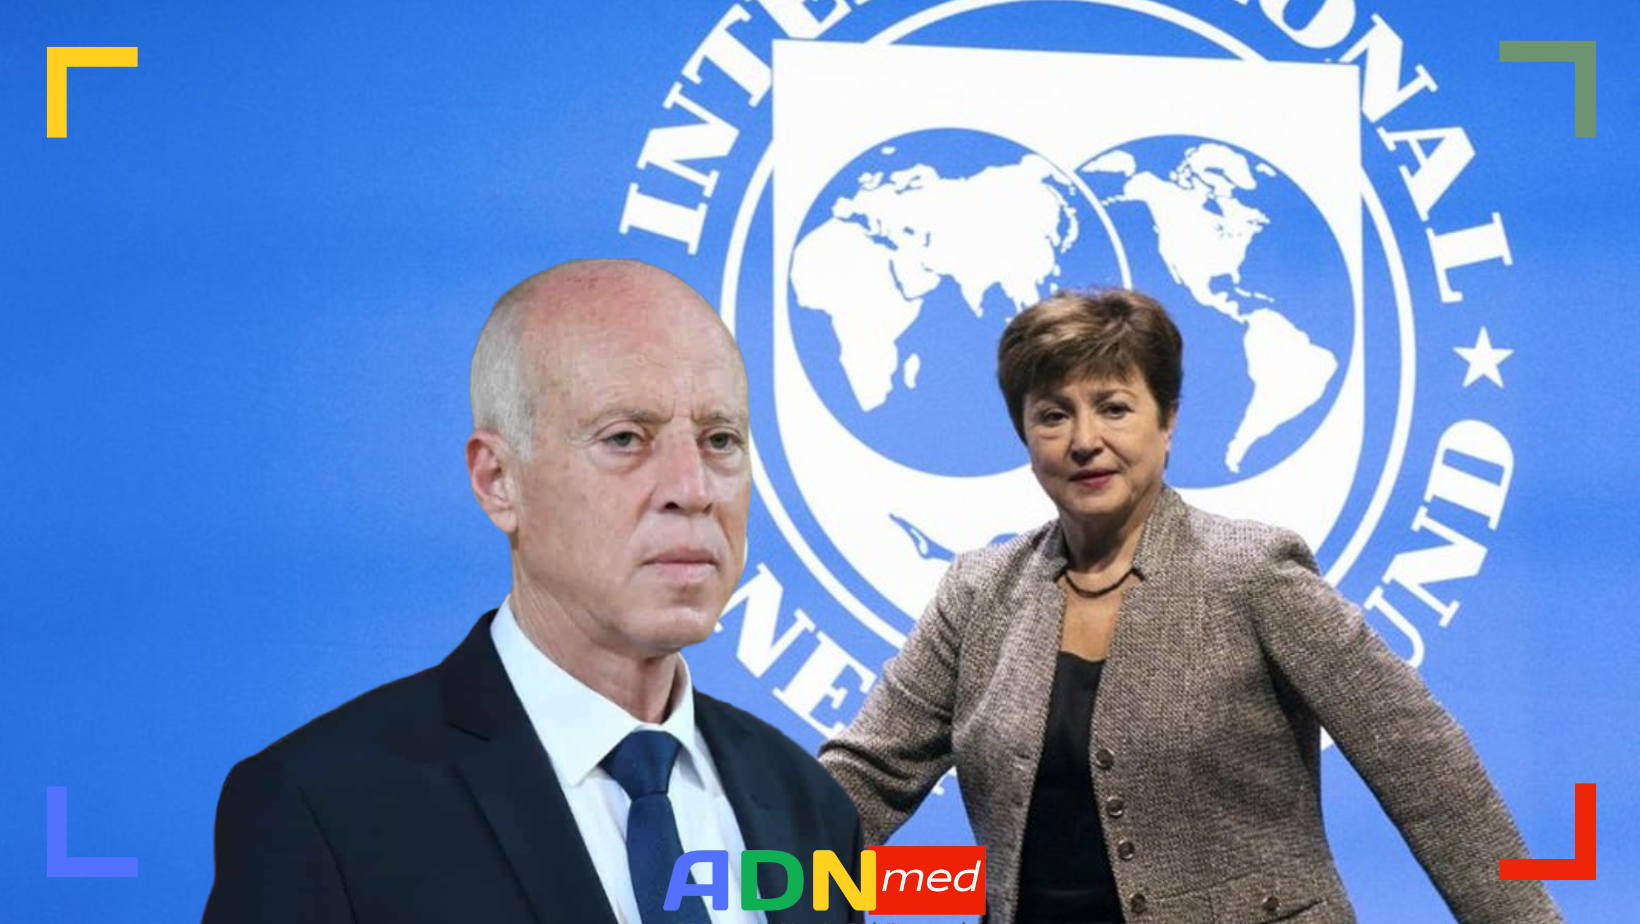 Kaïs Saïed à la directrice du FMI : "S'il n'en reste qu'un seul à refuser les recettes du FMI, je serai celui-là."